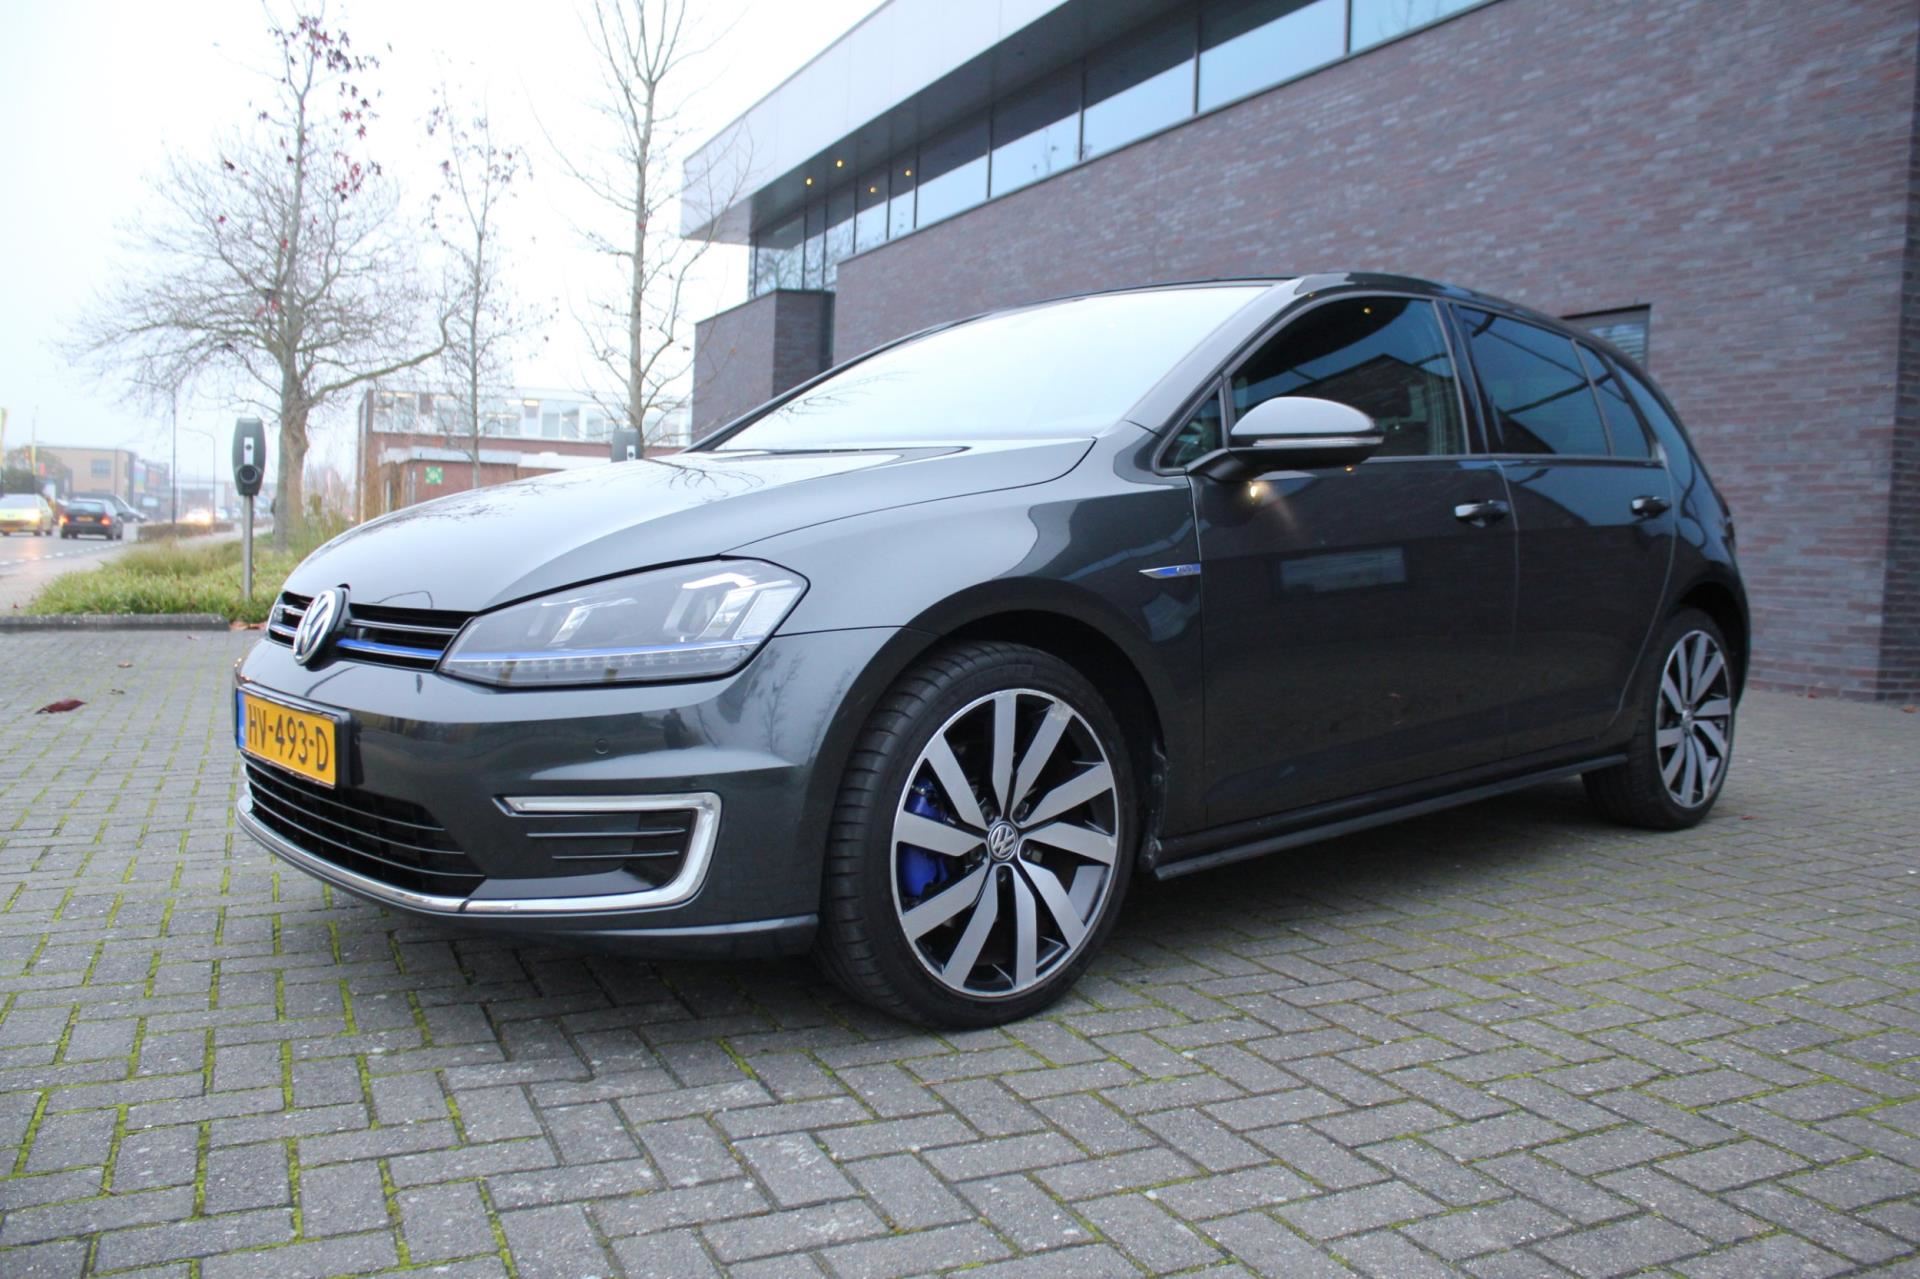 benzine Verwant Misverstand Volkswagen Golf - 1.4 TSI GTE panoramadak Automaat Hybride uit 2015 -  www.garageautoflex.nl